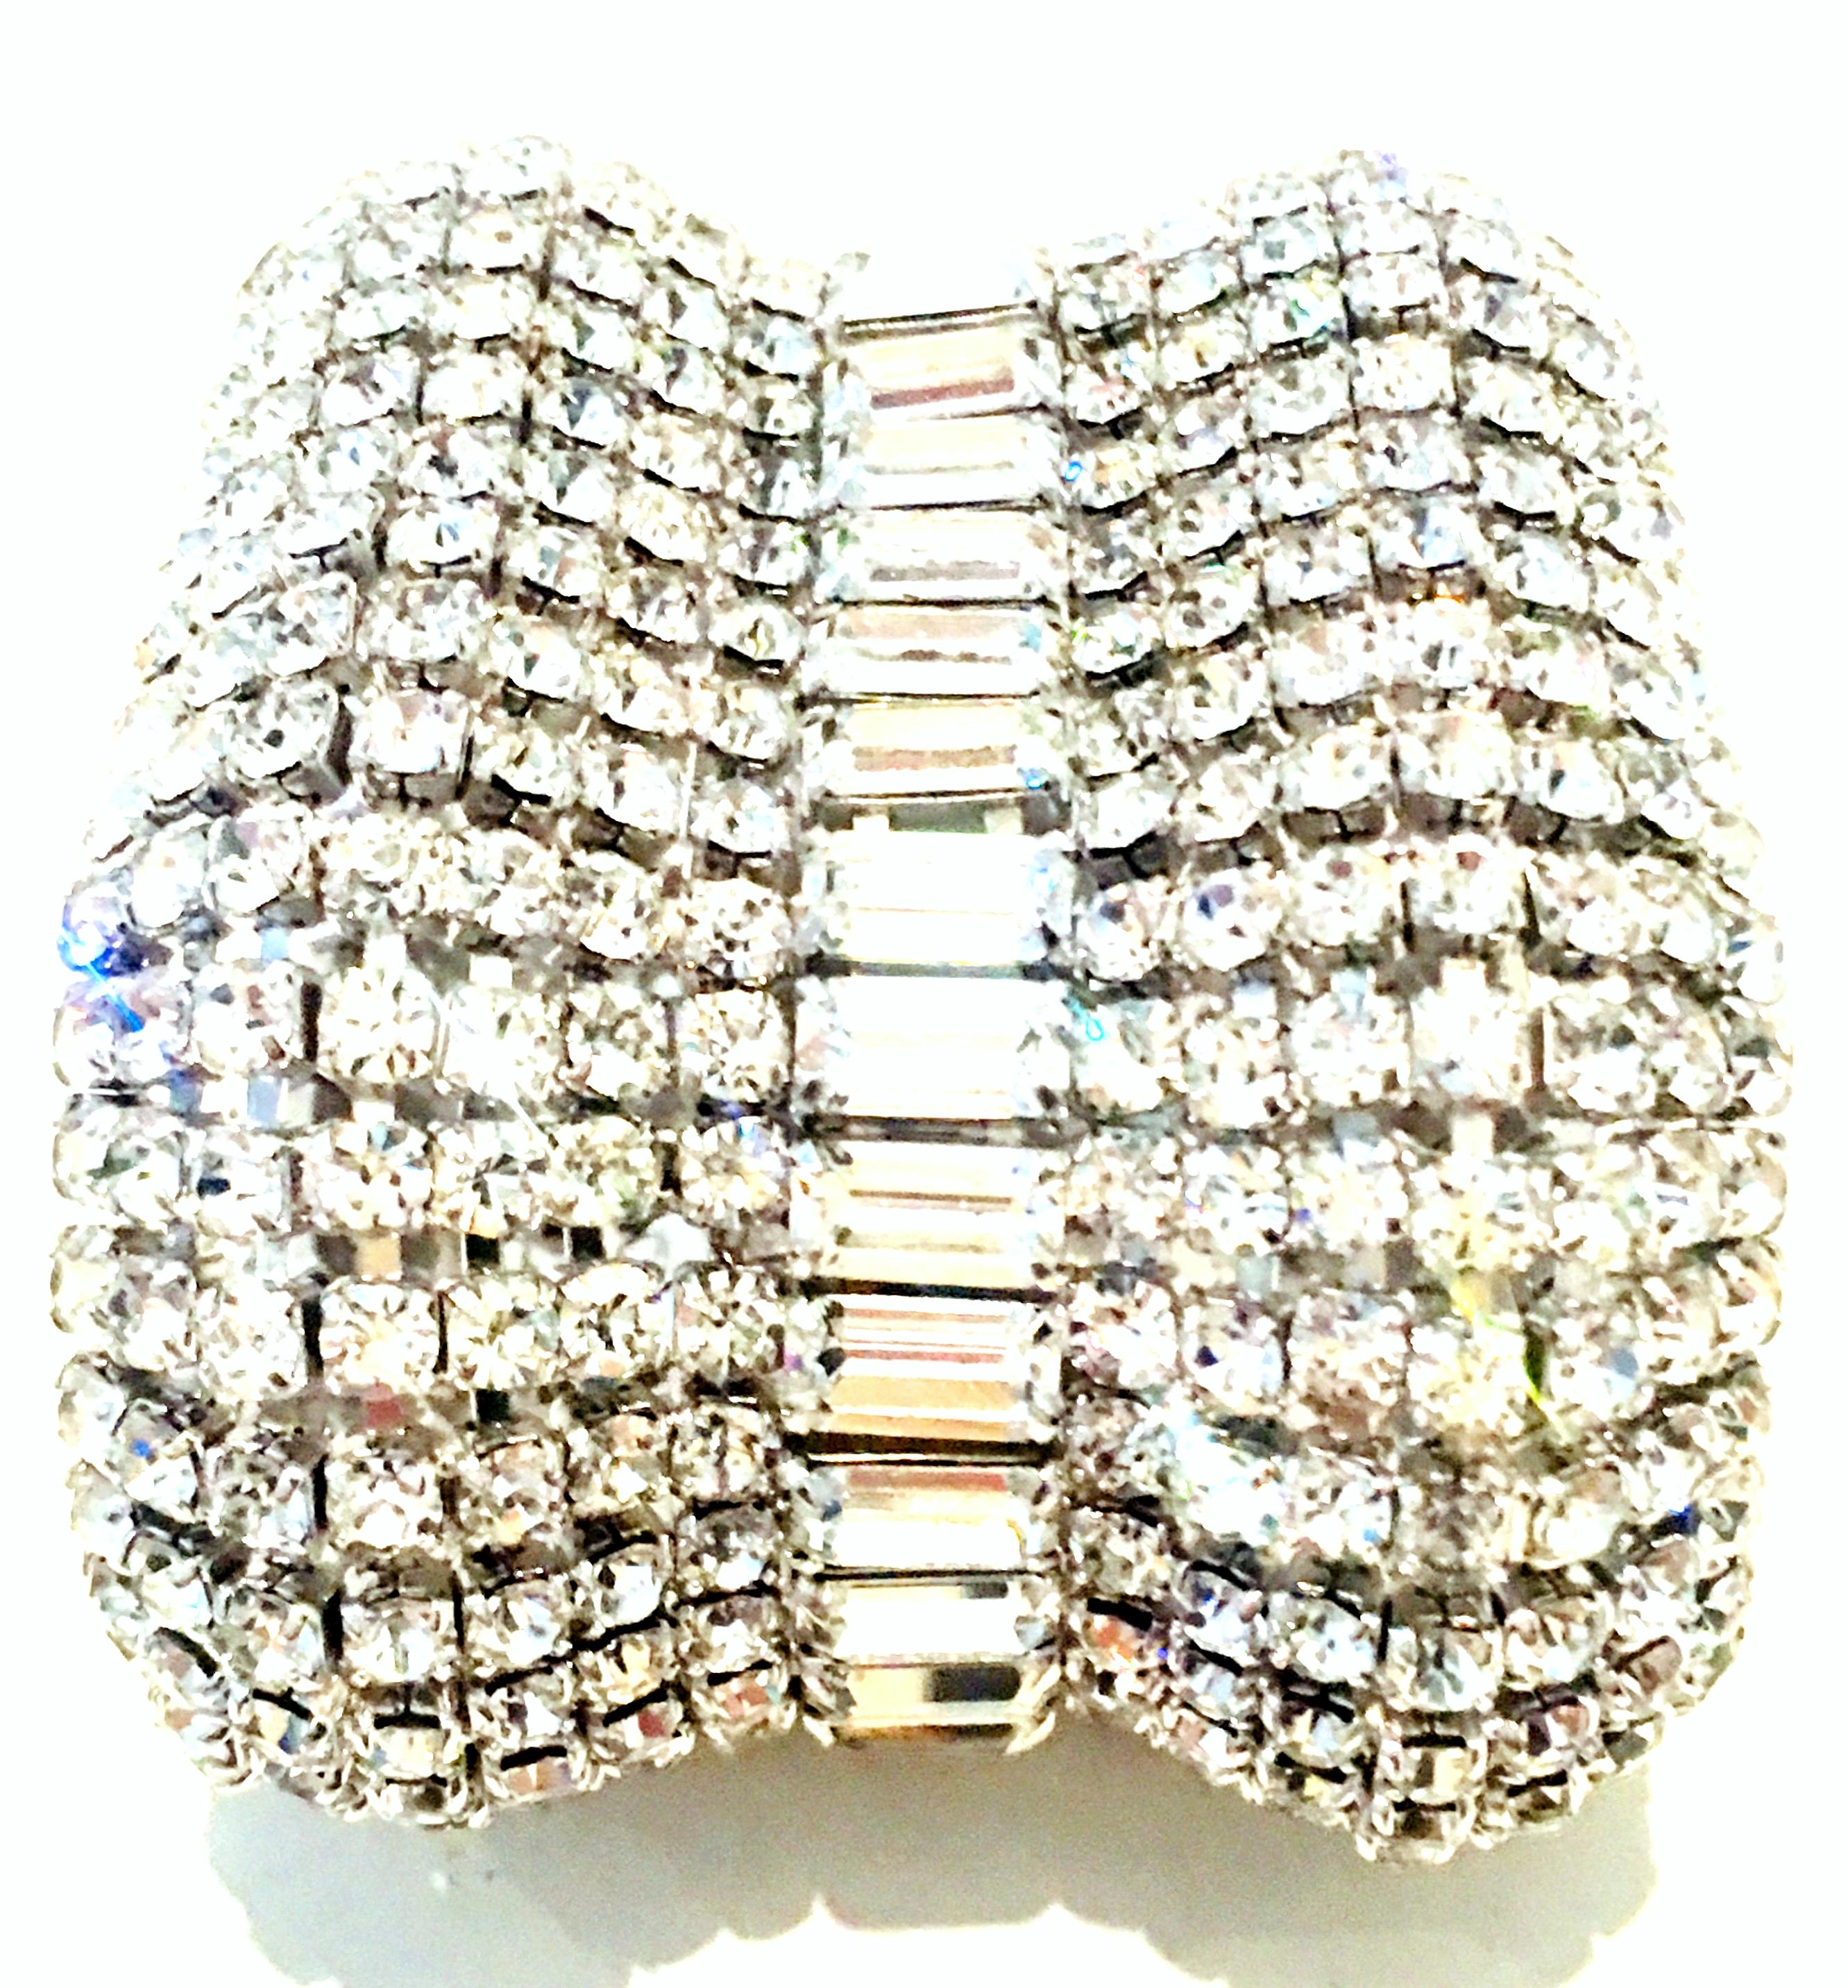 crystal cuff bracelet